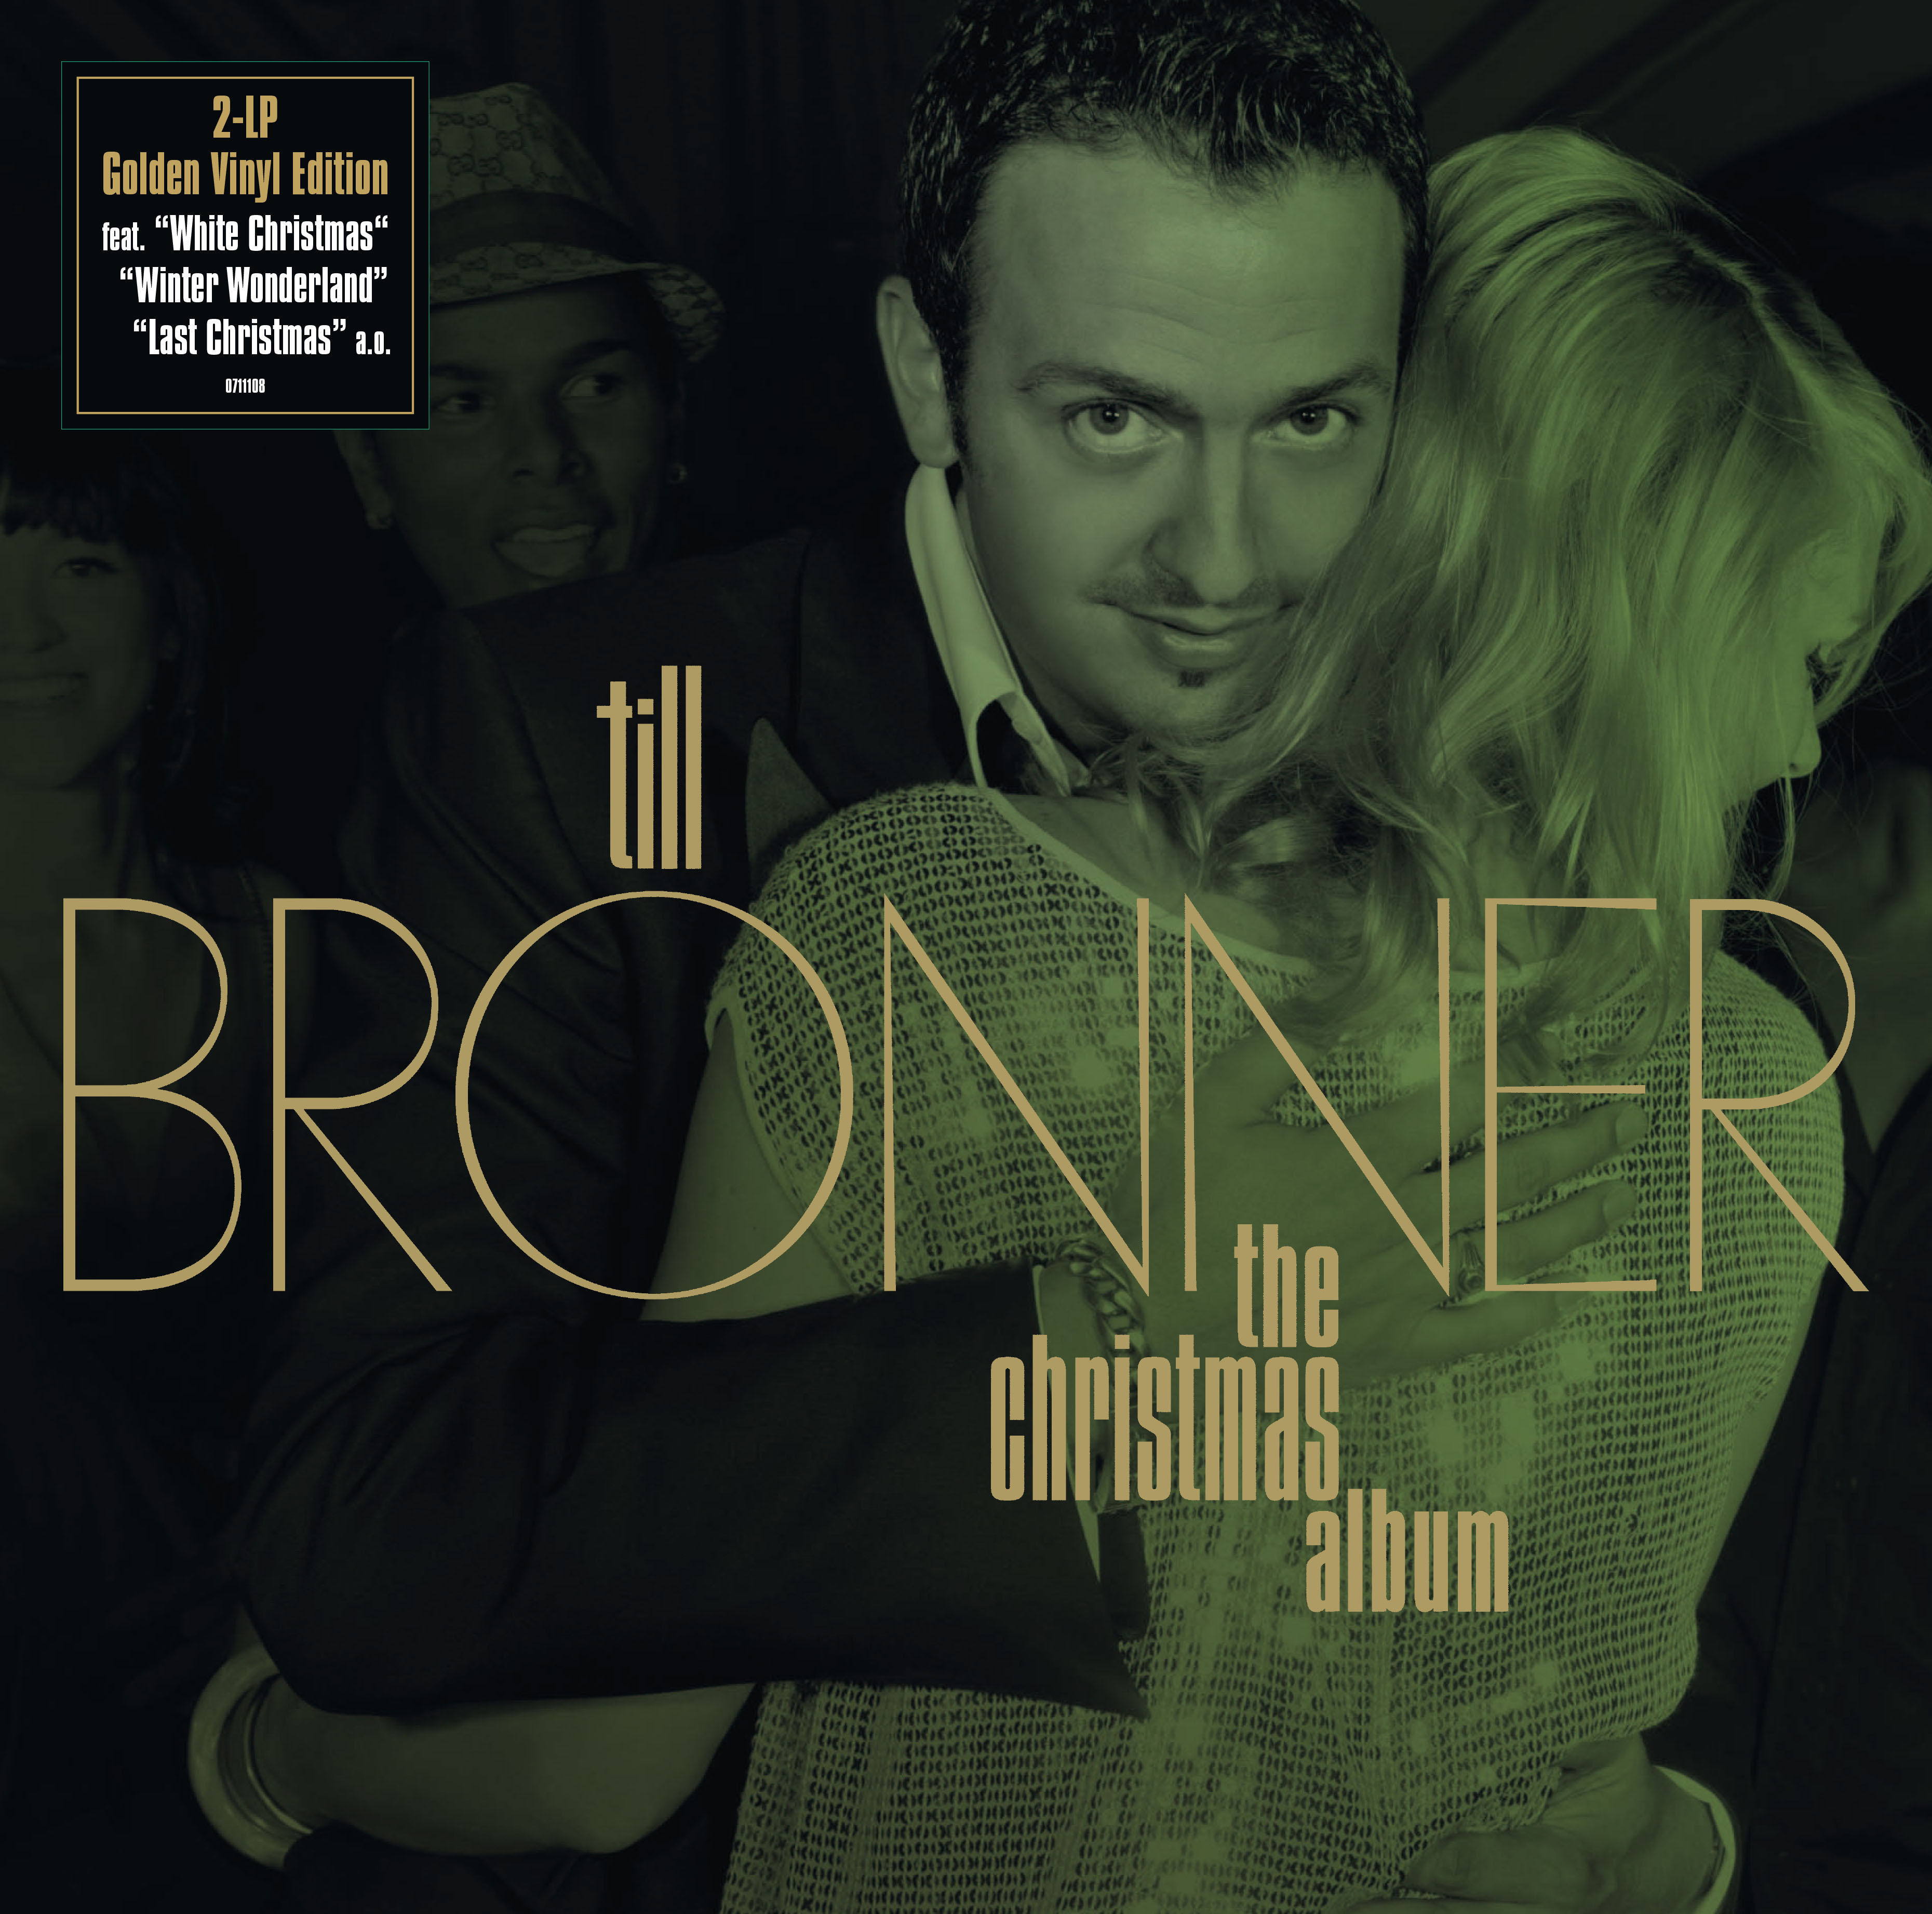 (Vinyl) - Till Album - The Edition) Christmas Brönner (Ltd.Gold